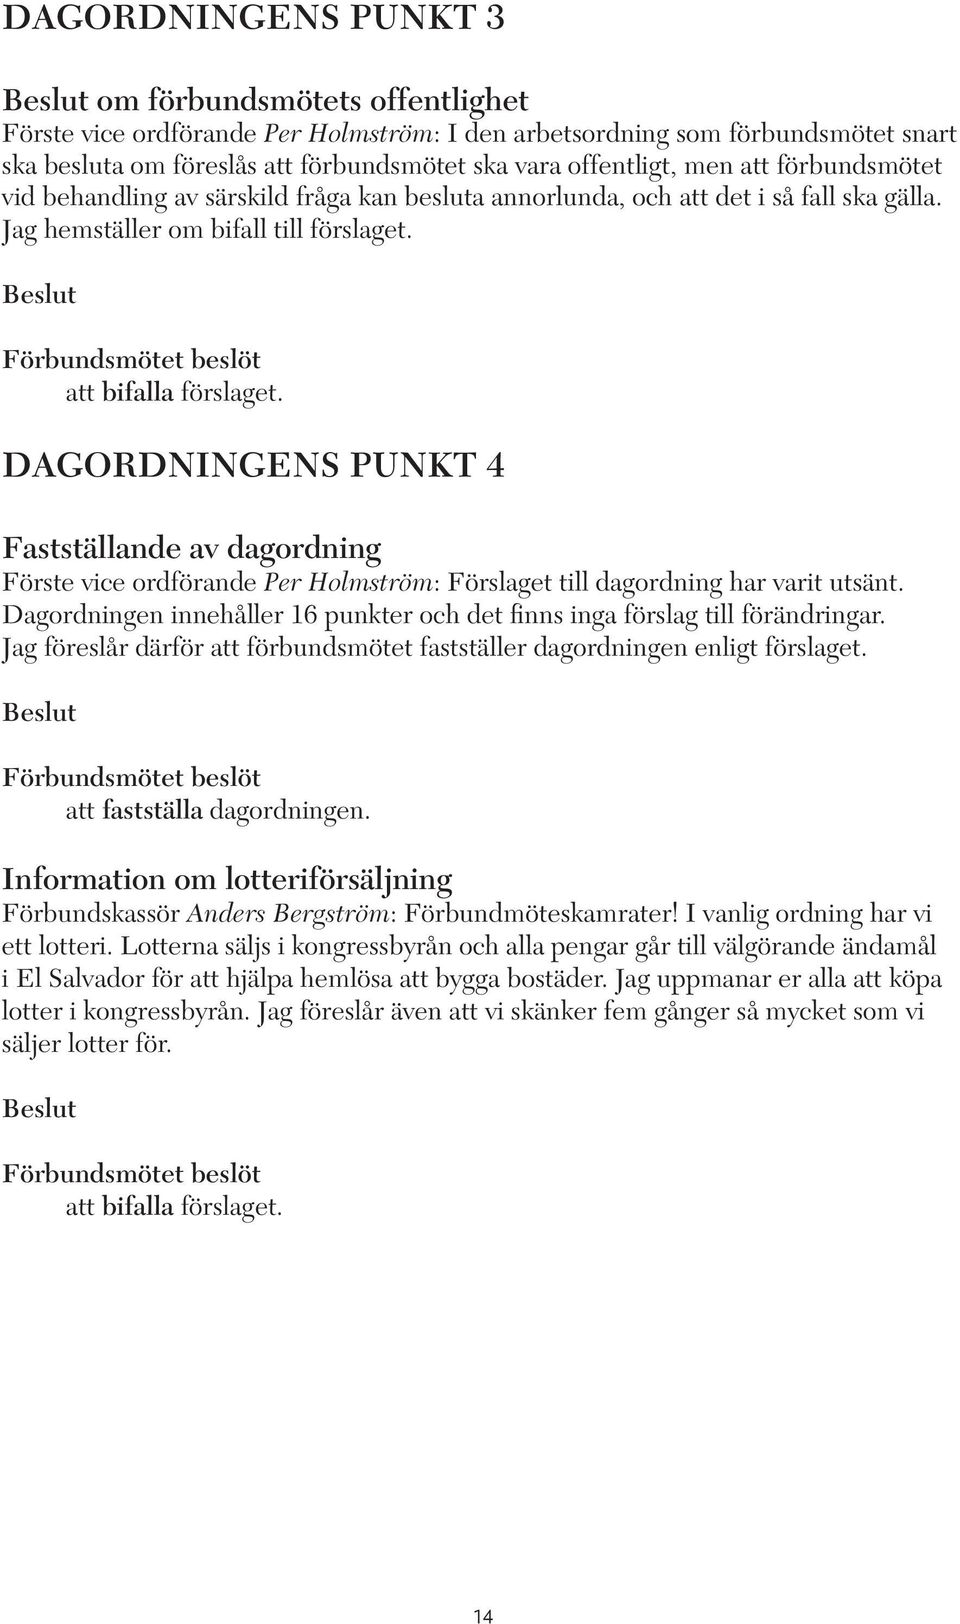 DAGORDNINGENS PUNKT 4 Fastställande av dagordning Förste vice ordförande Per Holmström: Förslaget till dagordning har varit utsänt.